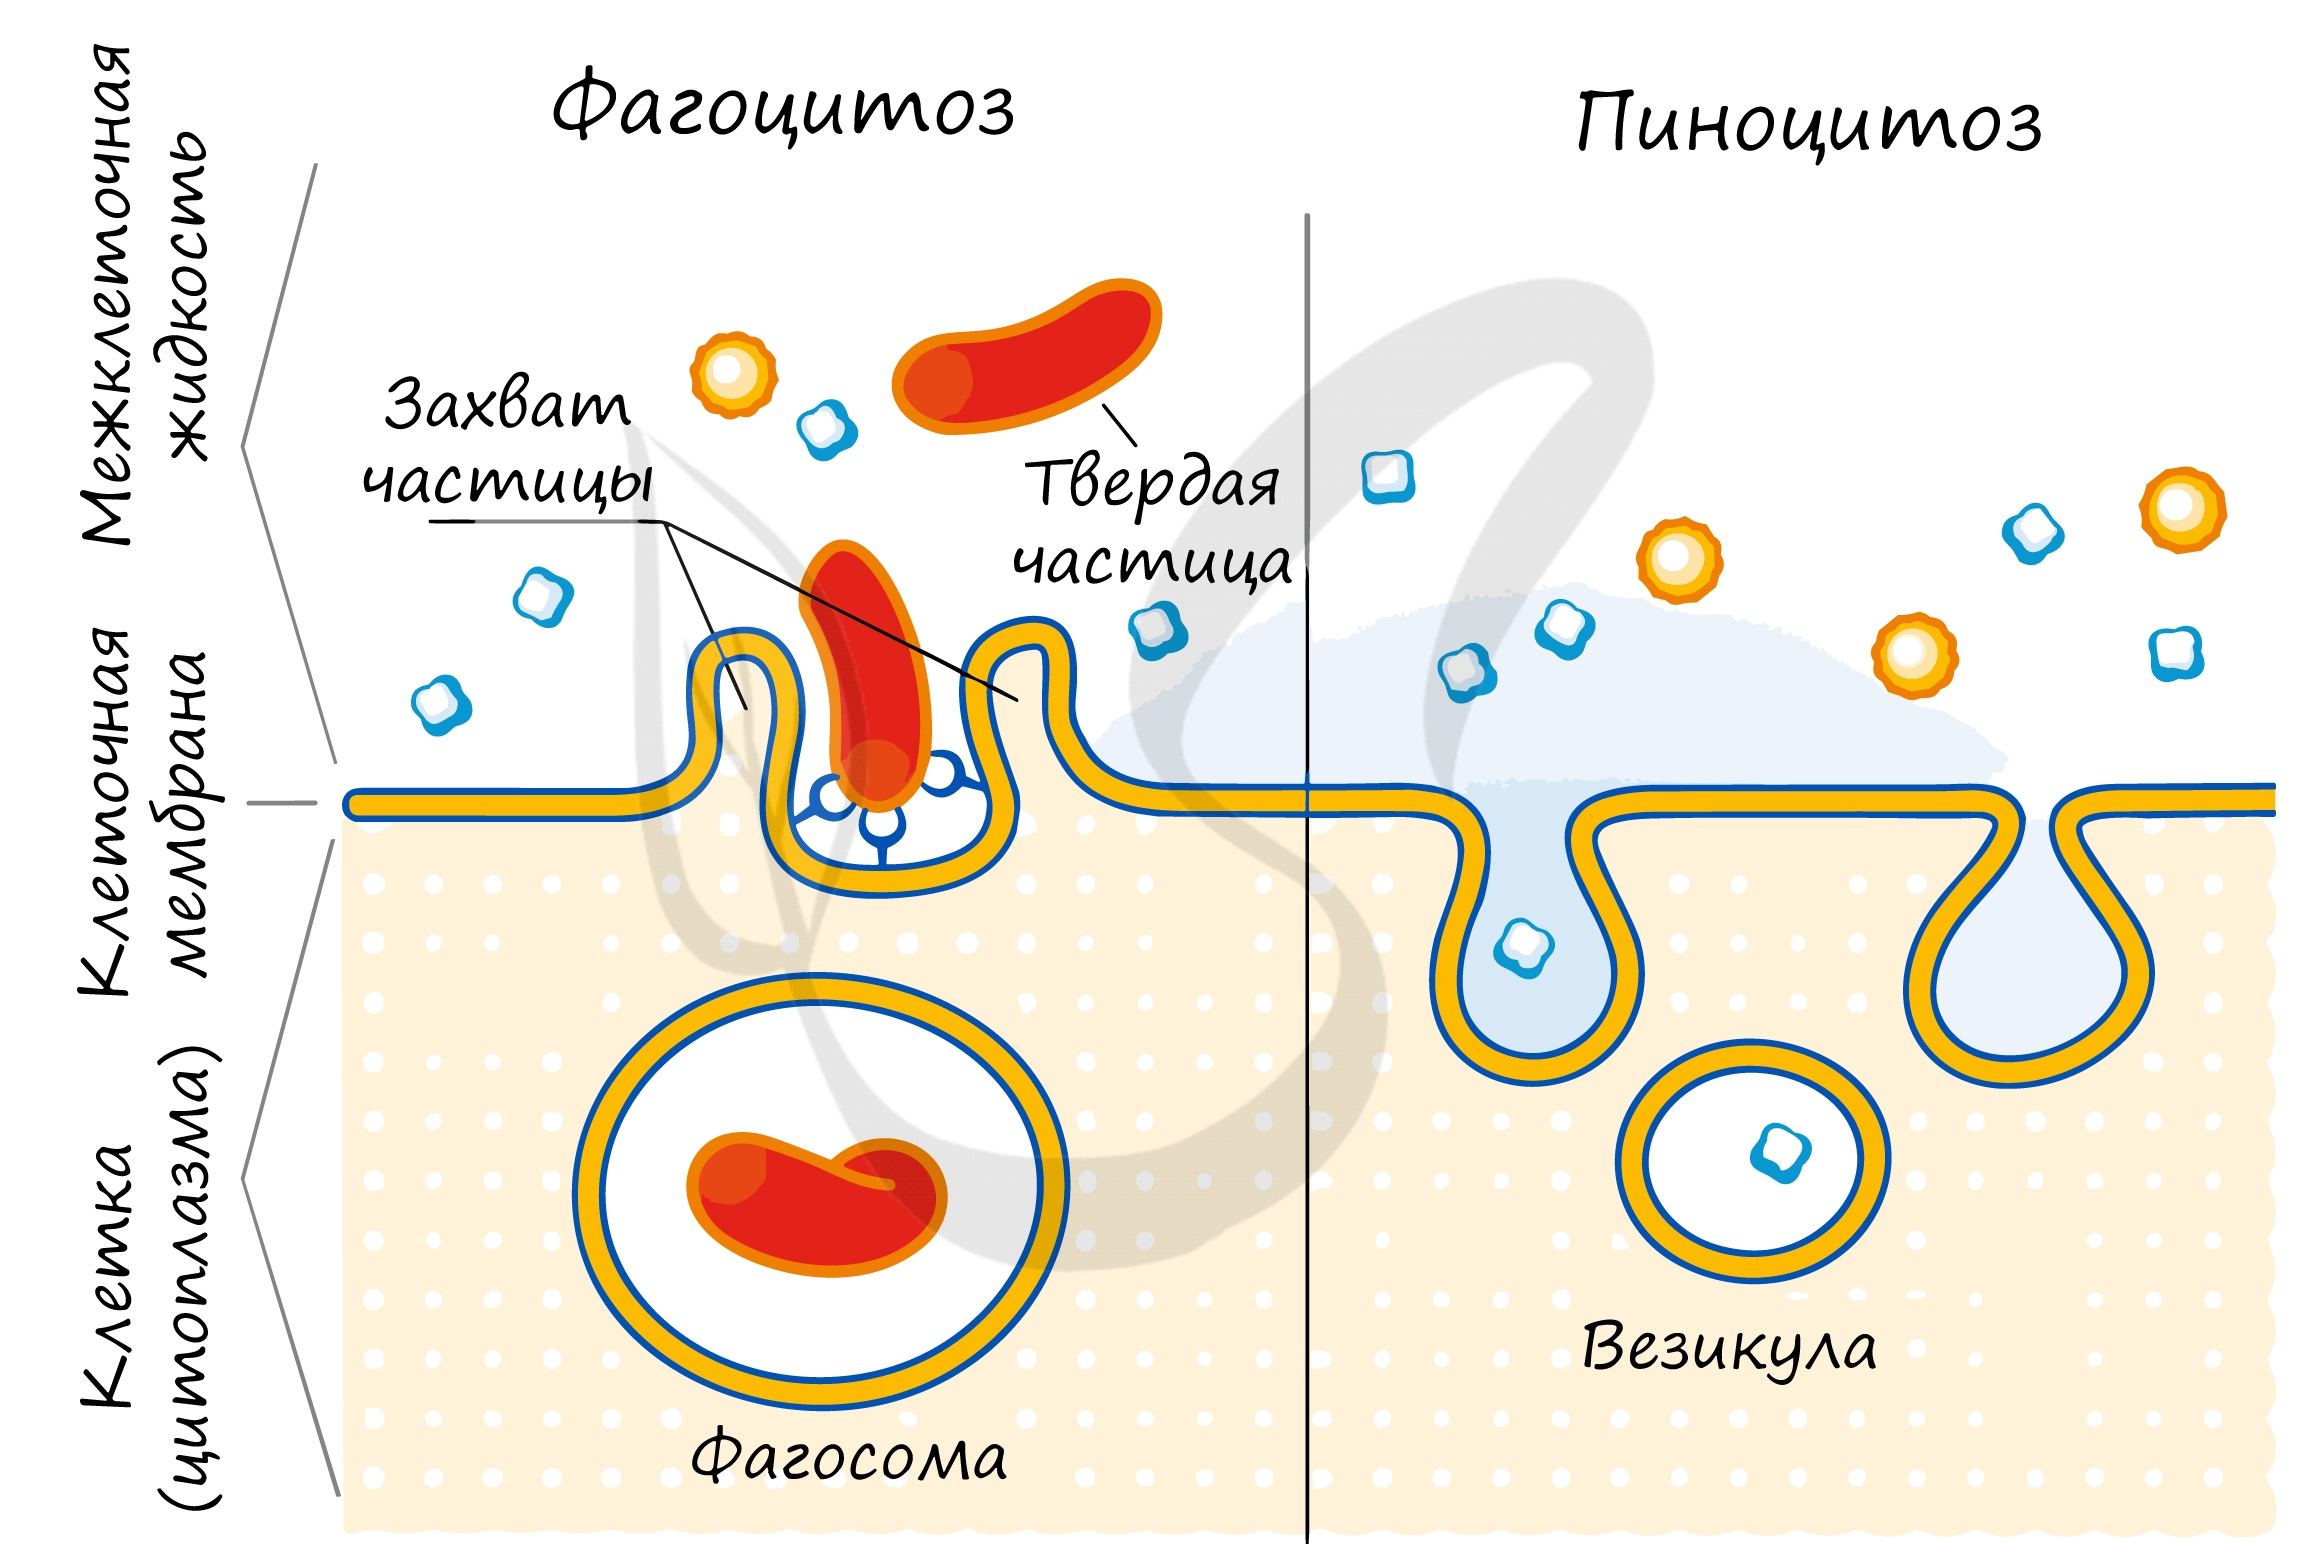 Фагоцитоз прокариот. Схема фагоцитоза и пиноцитоза. Схема эндоцитоза. Фагоцитоз мембраны клетки. Эндоцитоз экзоцитоз фагоцитоз это.